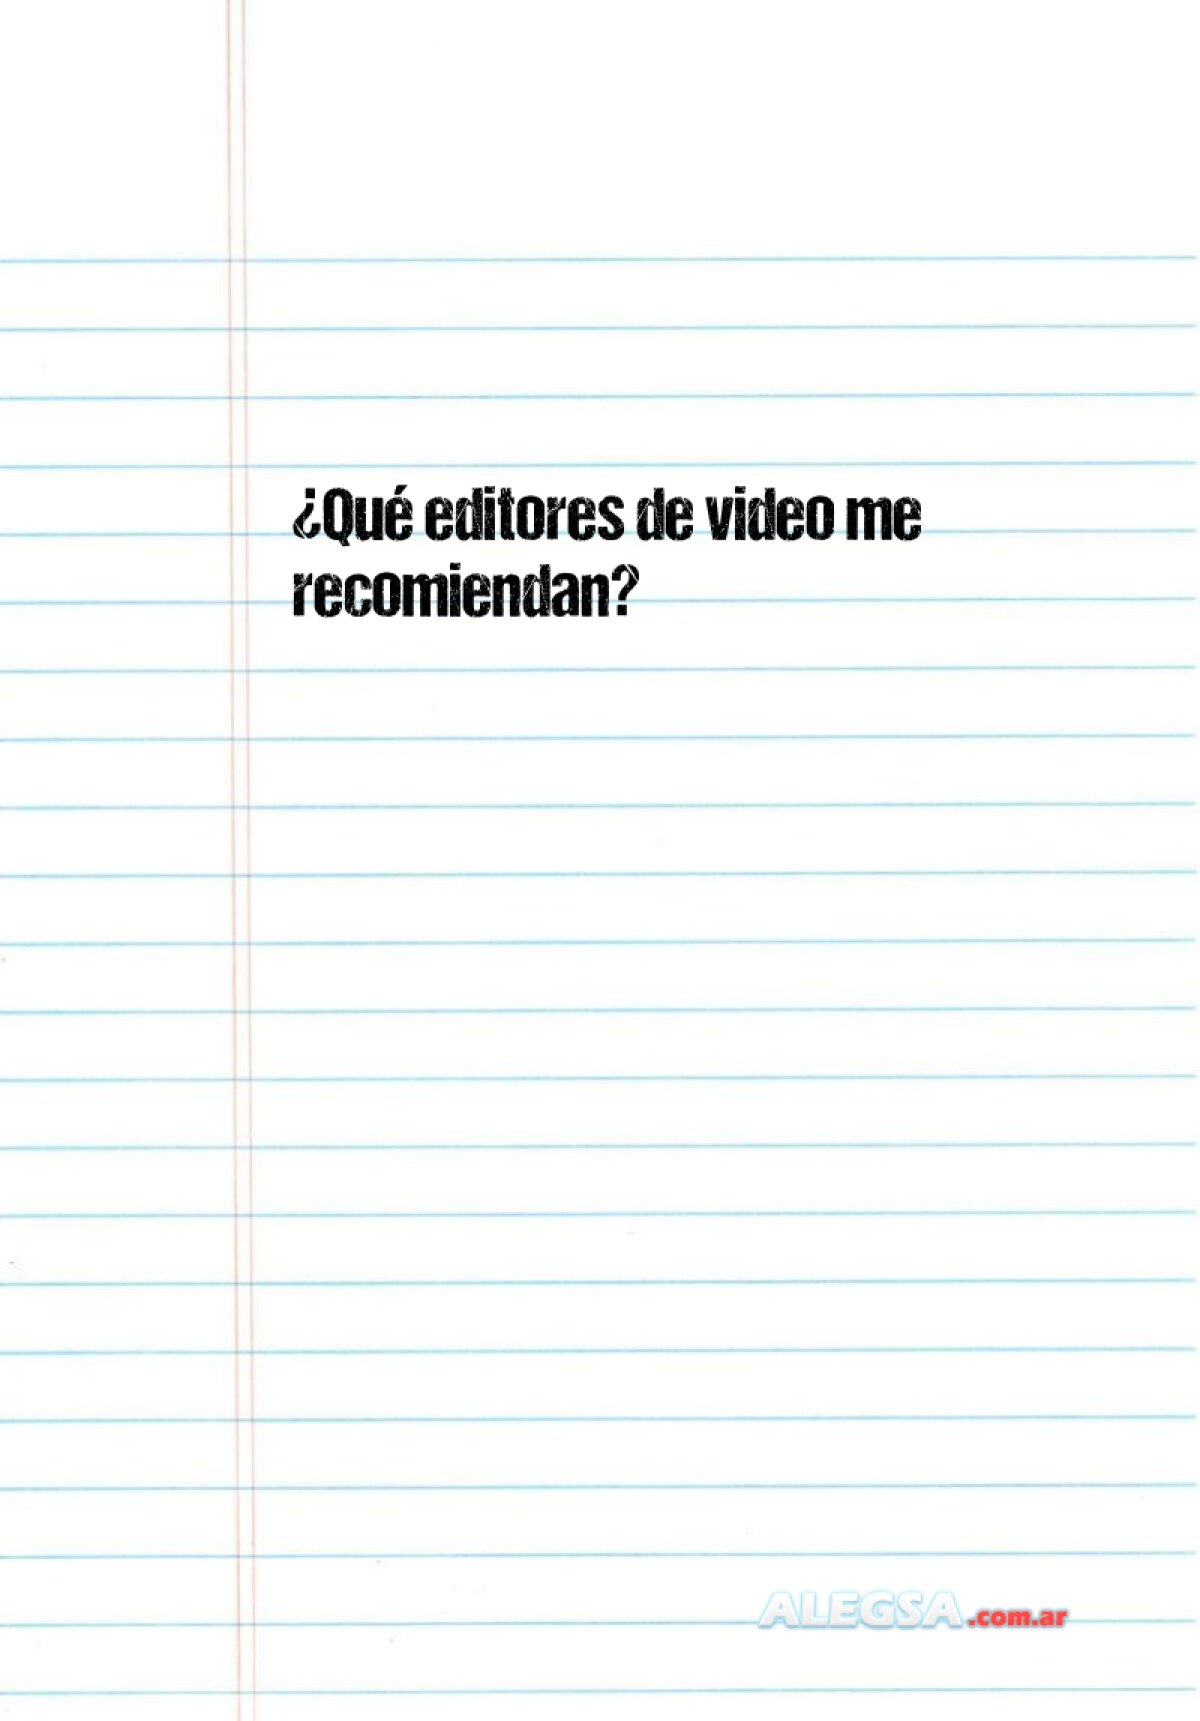 ¿Qué editores de video me recomiendan? 